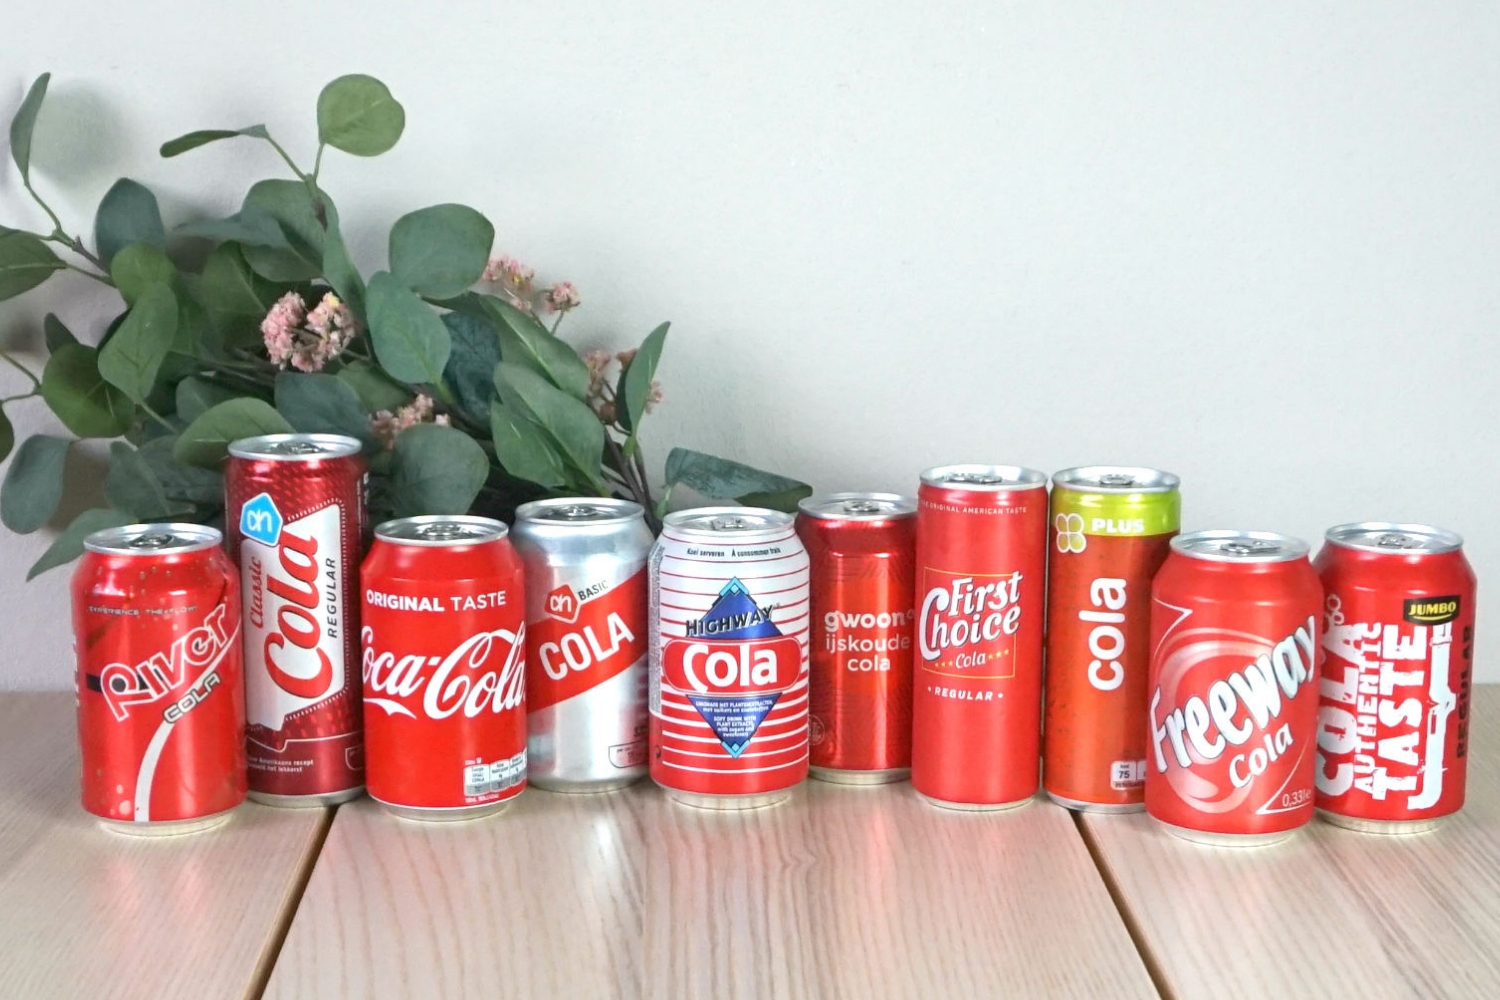 Ontwaken Klik salto Cola smaaktest; de goedkoopste, de slankste en de lekkerste! - Gierige Gerda